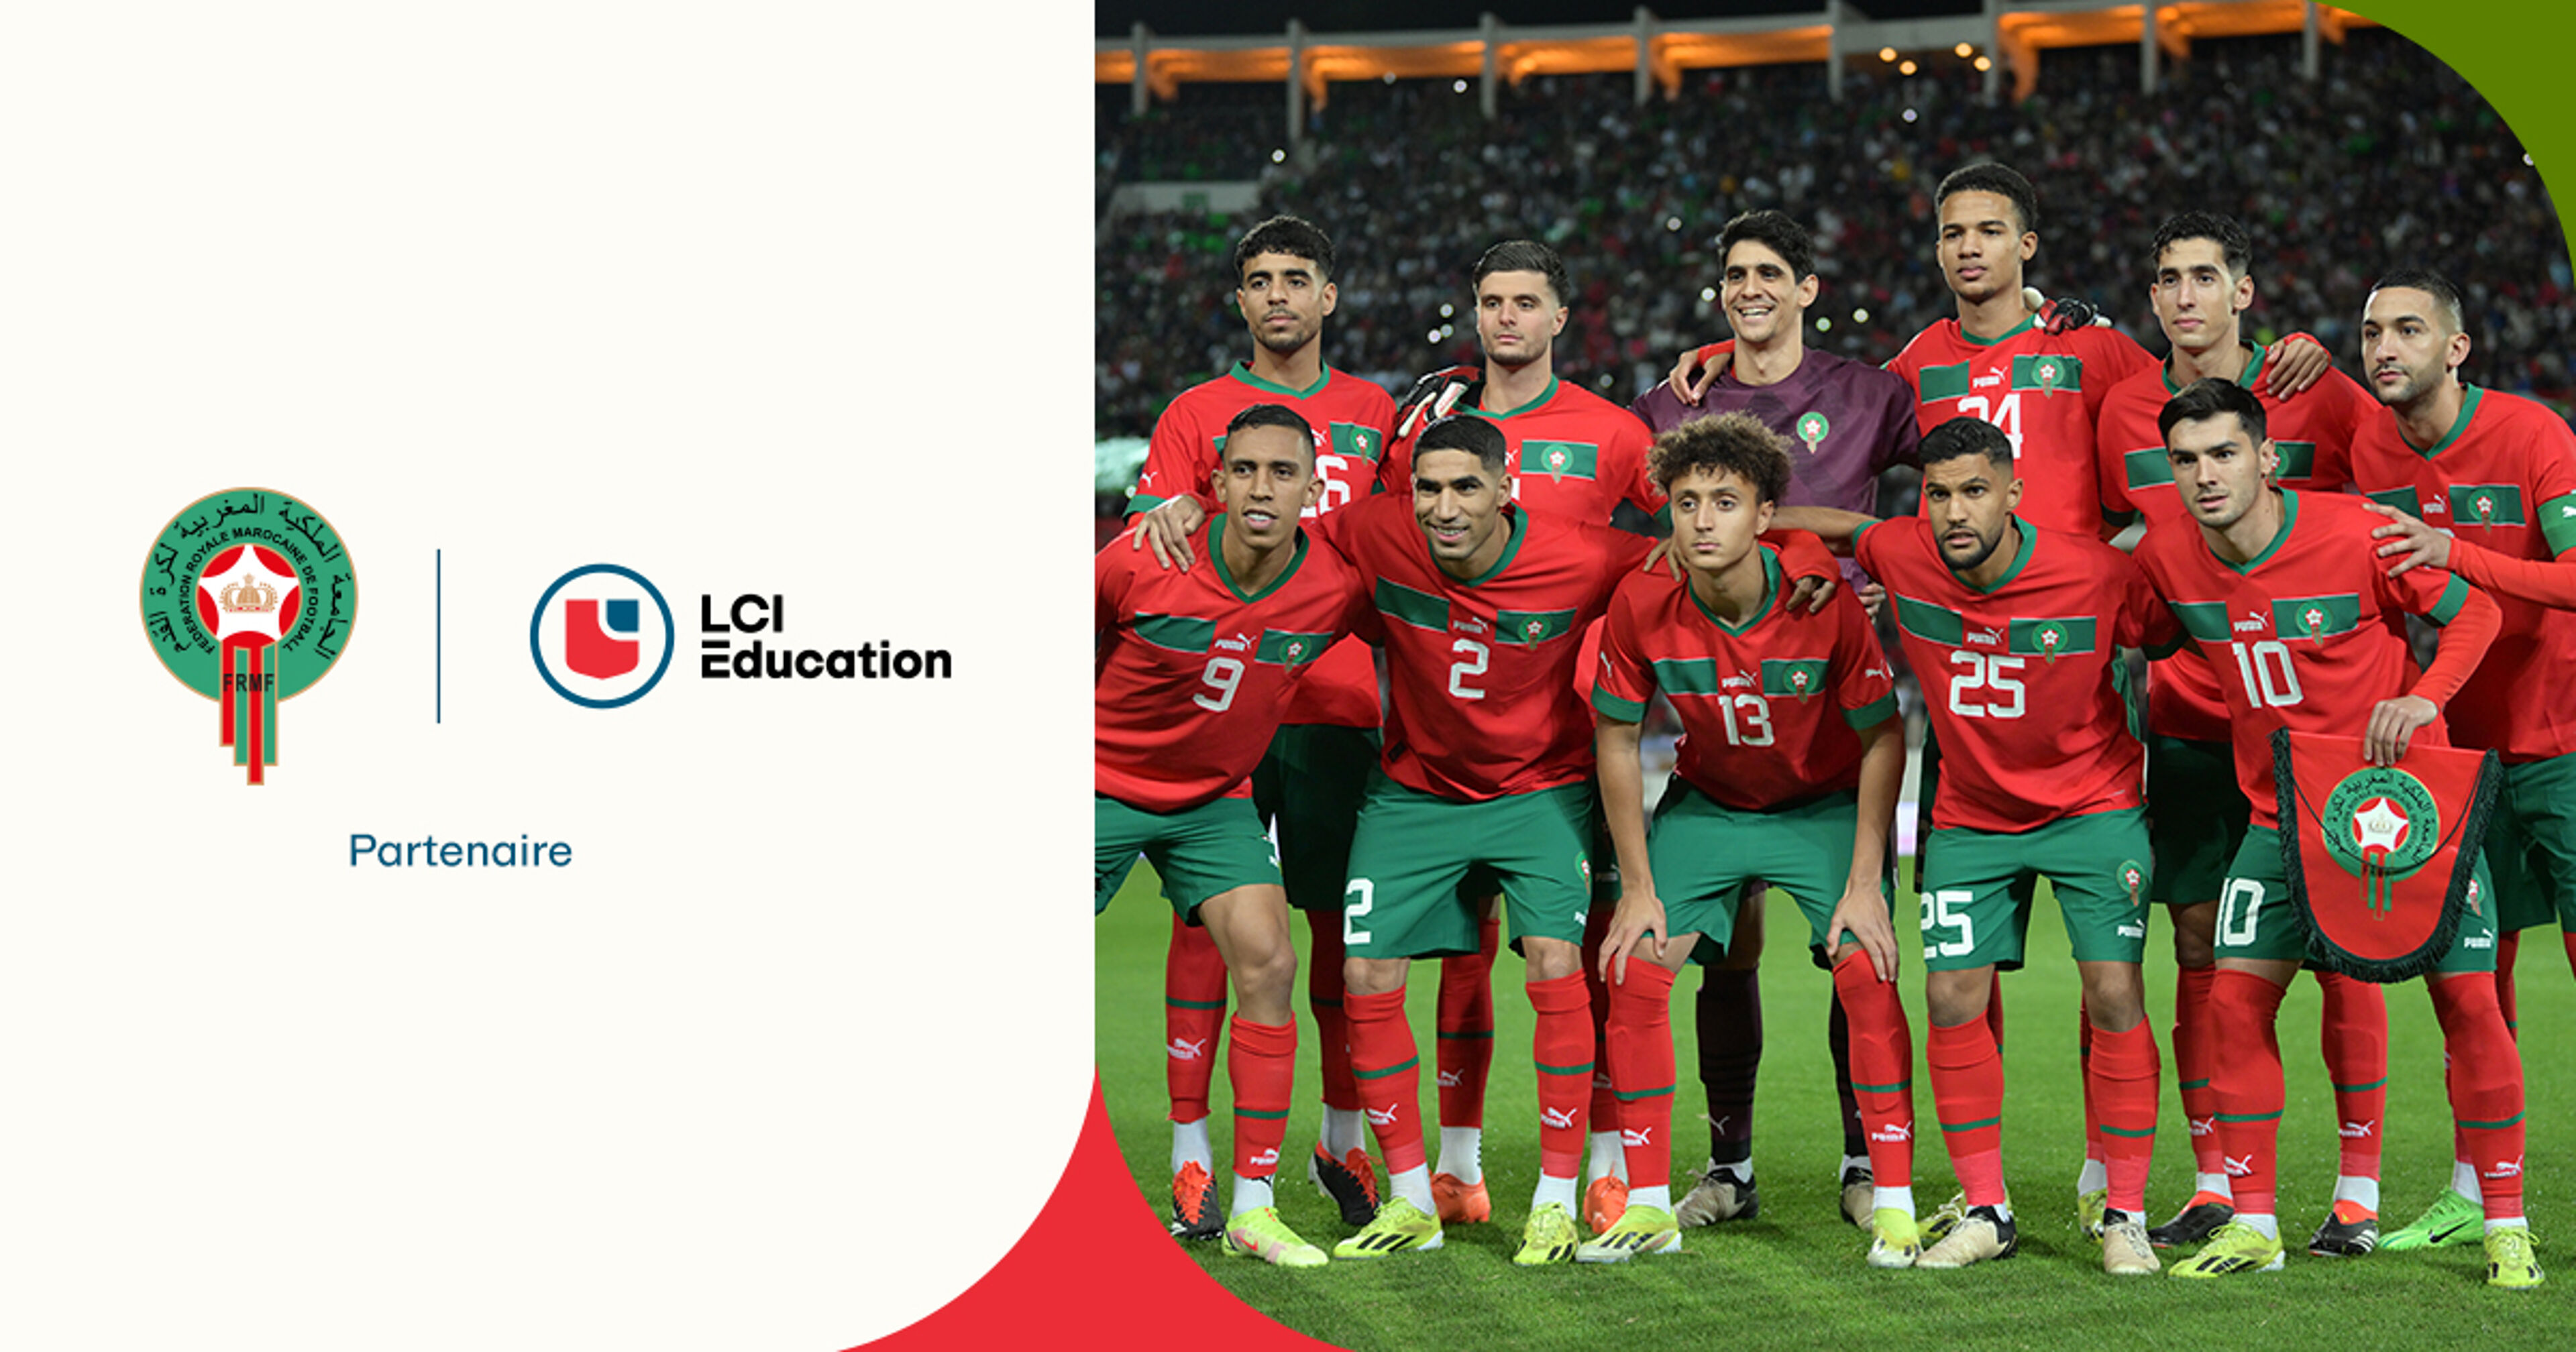 L'équipe nationale marocaine de football en maillots verts, en partenariat avec LCI Éducation.